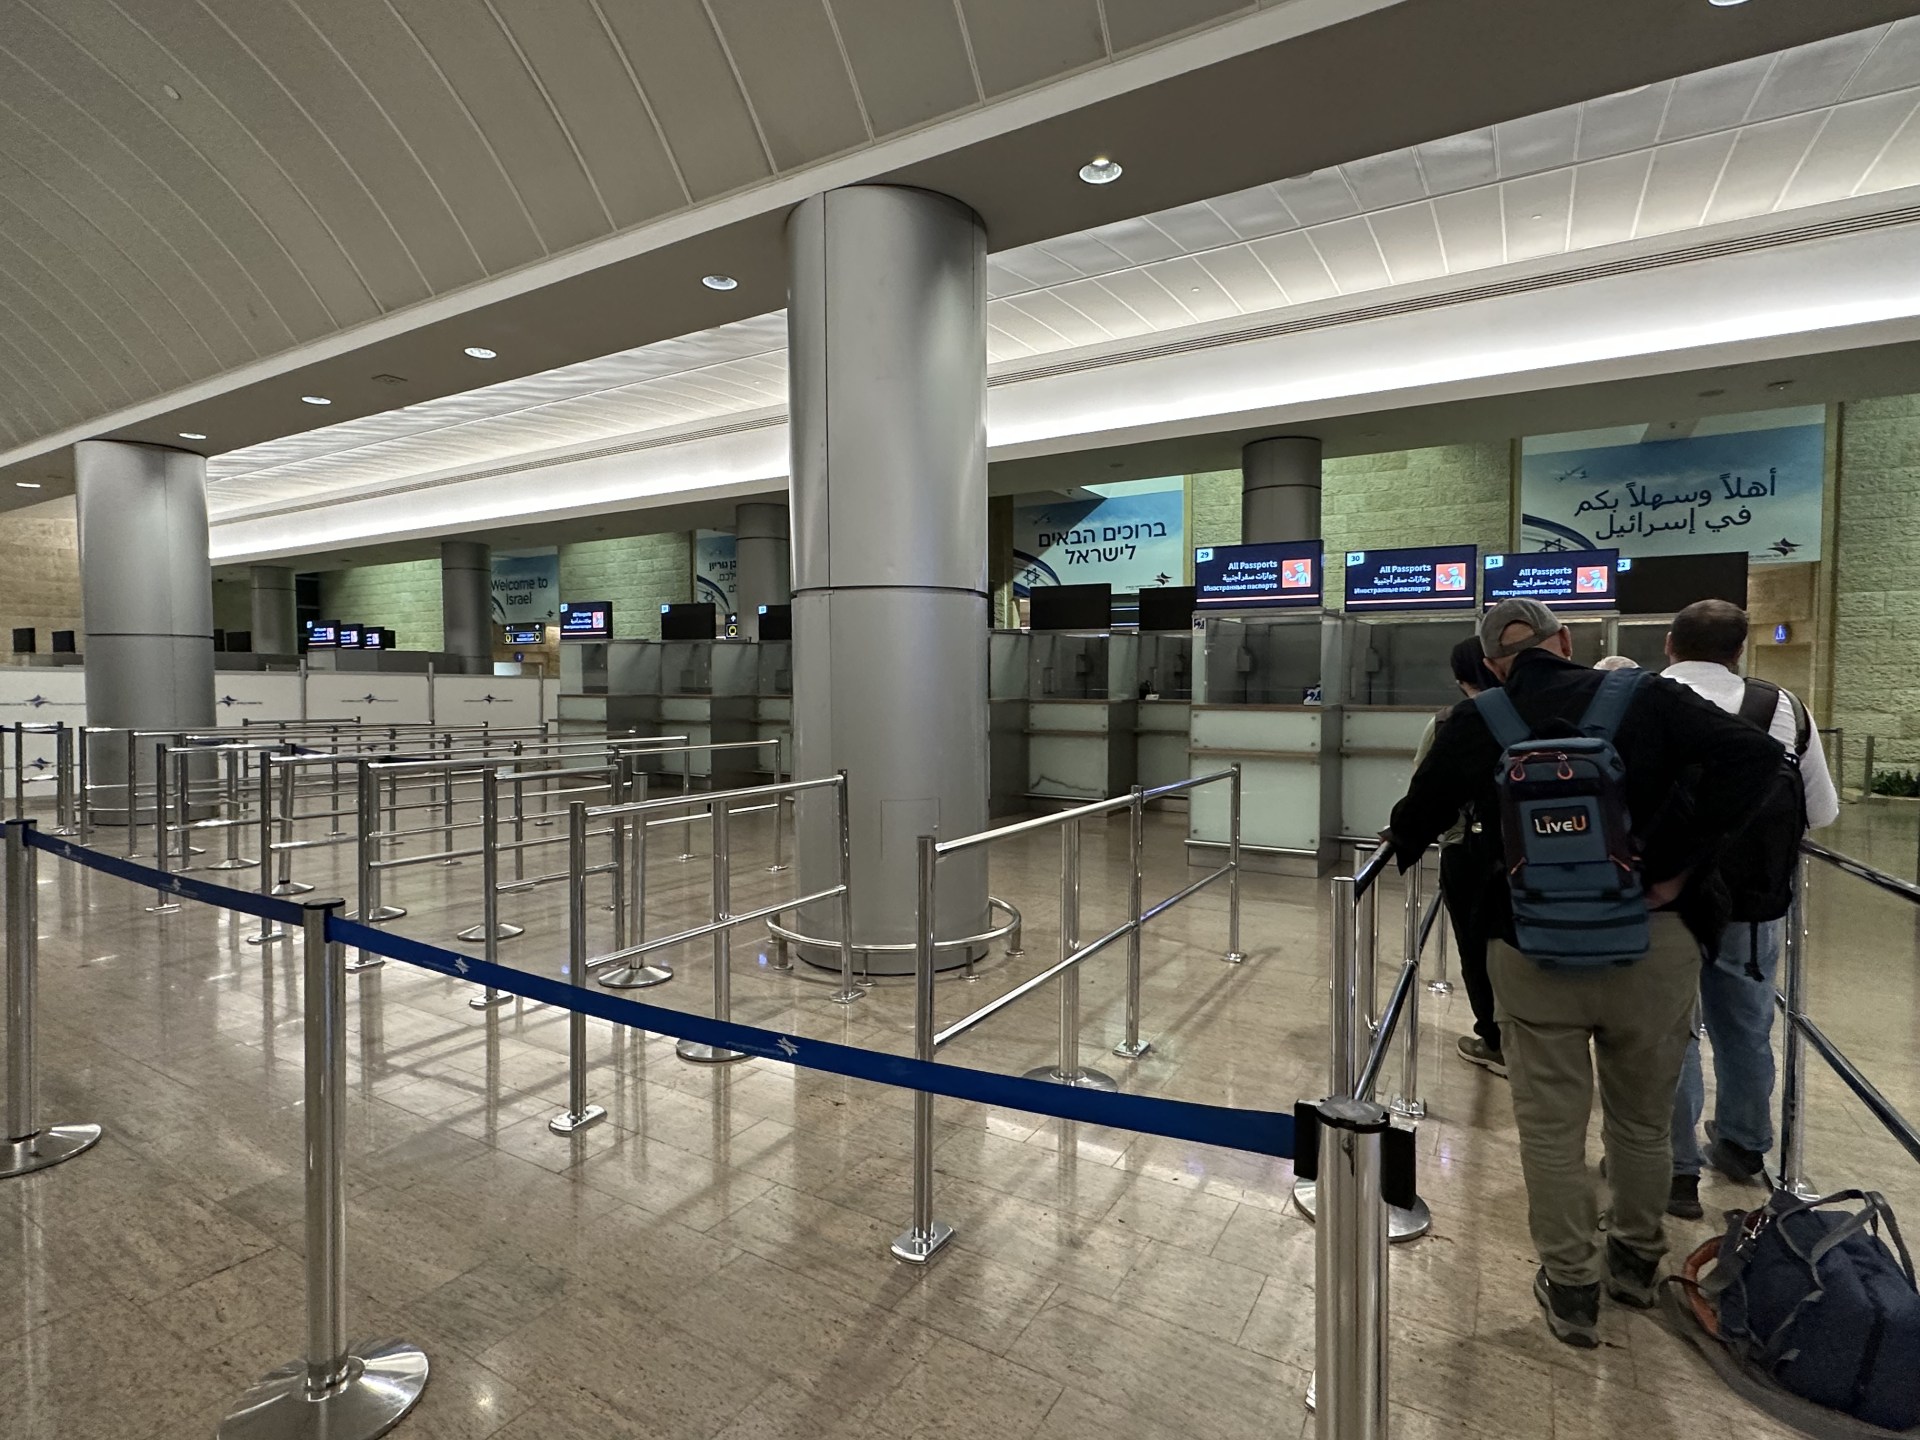 مطار بن غوريون الإسرائيلي يُلزم 600 موظف بإجازات غير مدفوعة | اقتصاد – البوكس نيوز